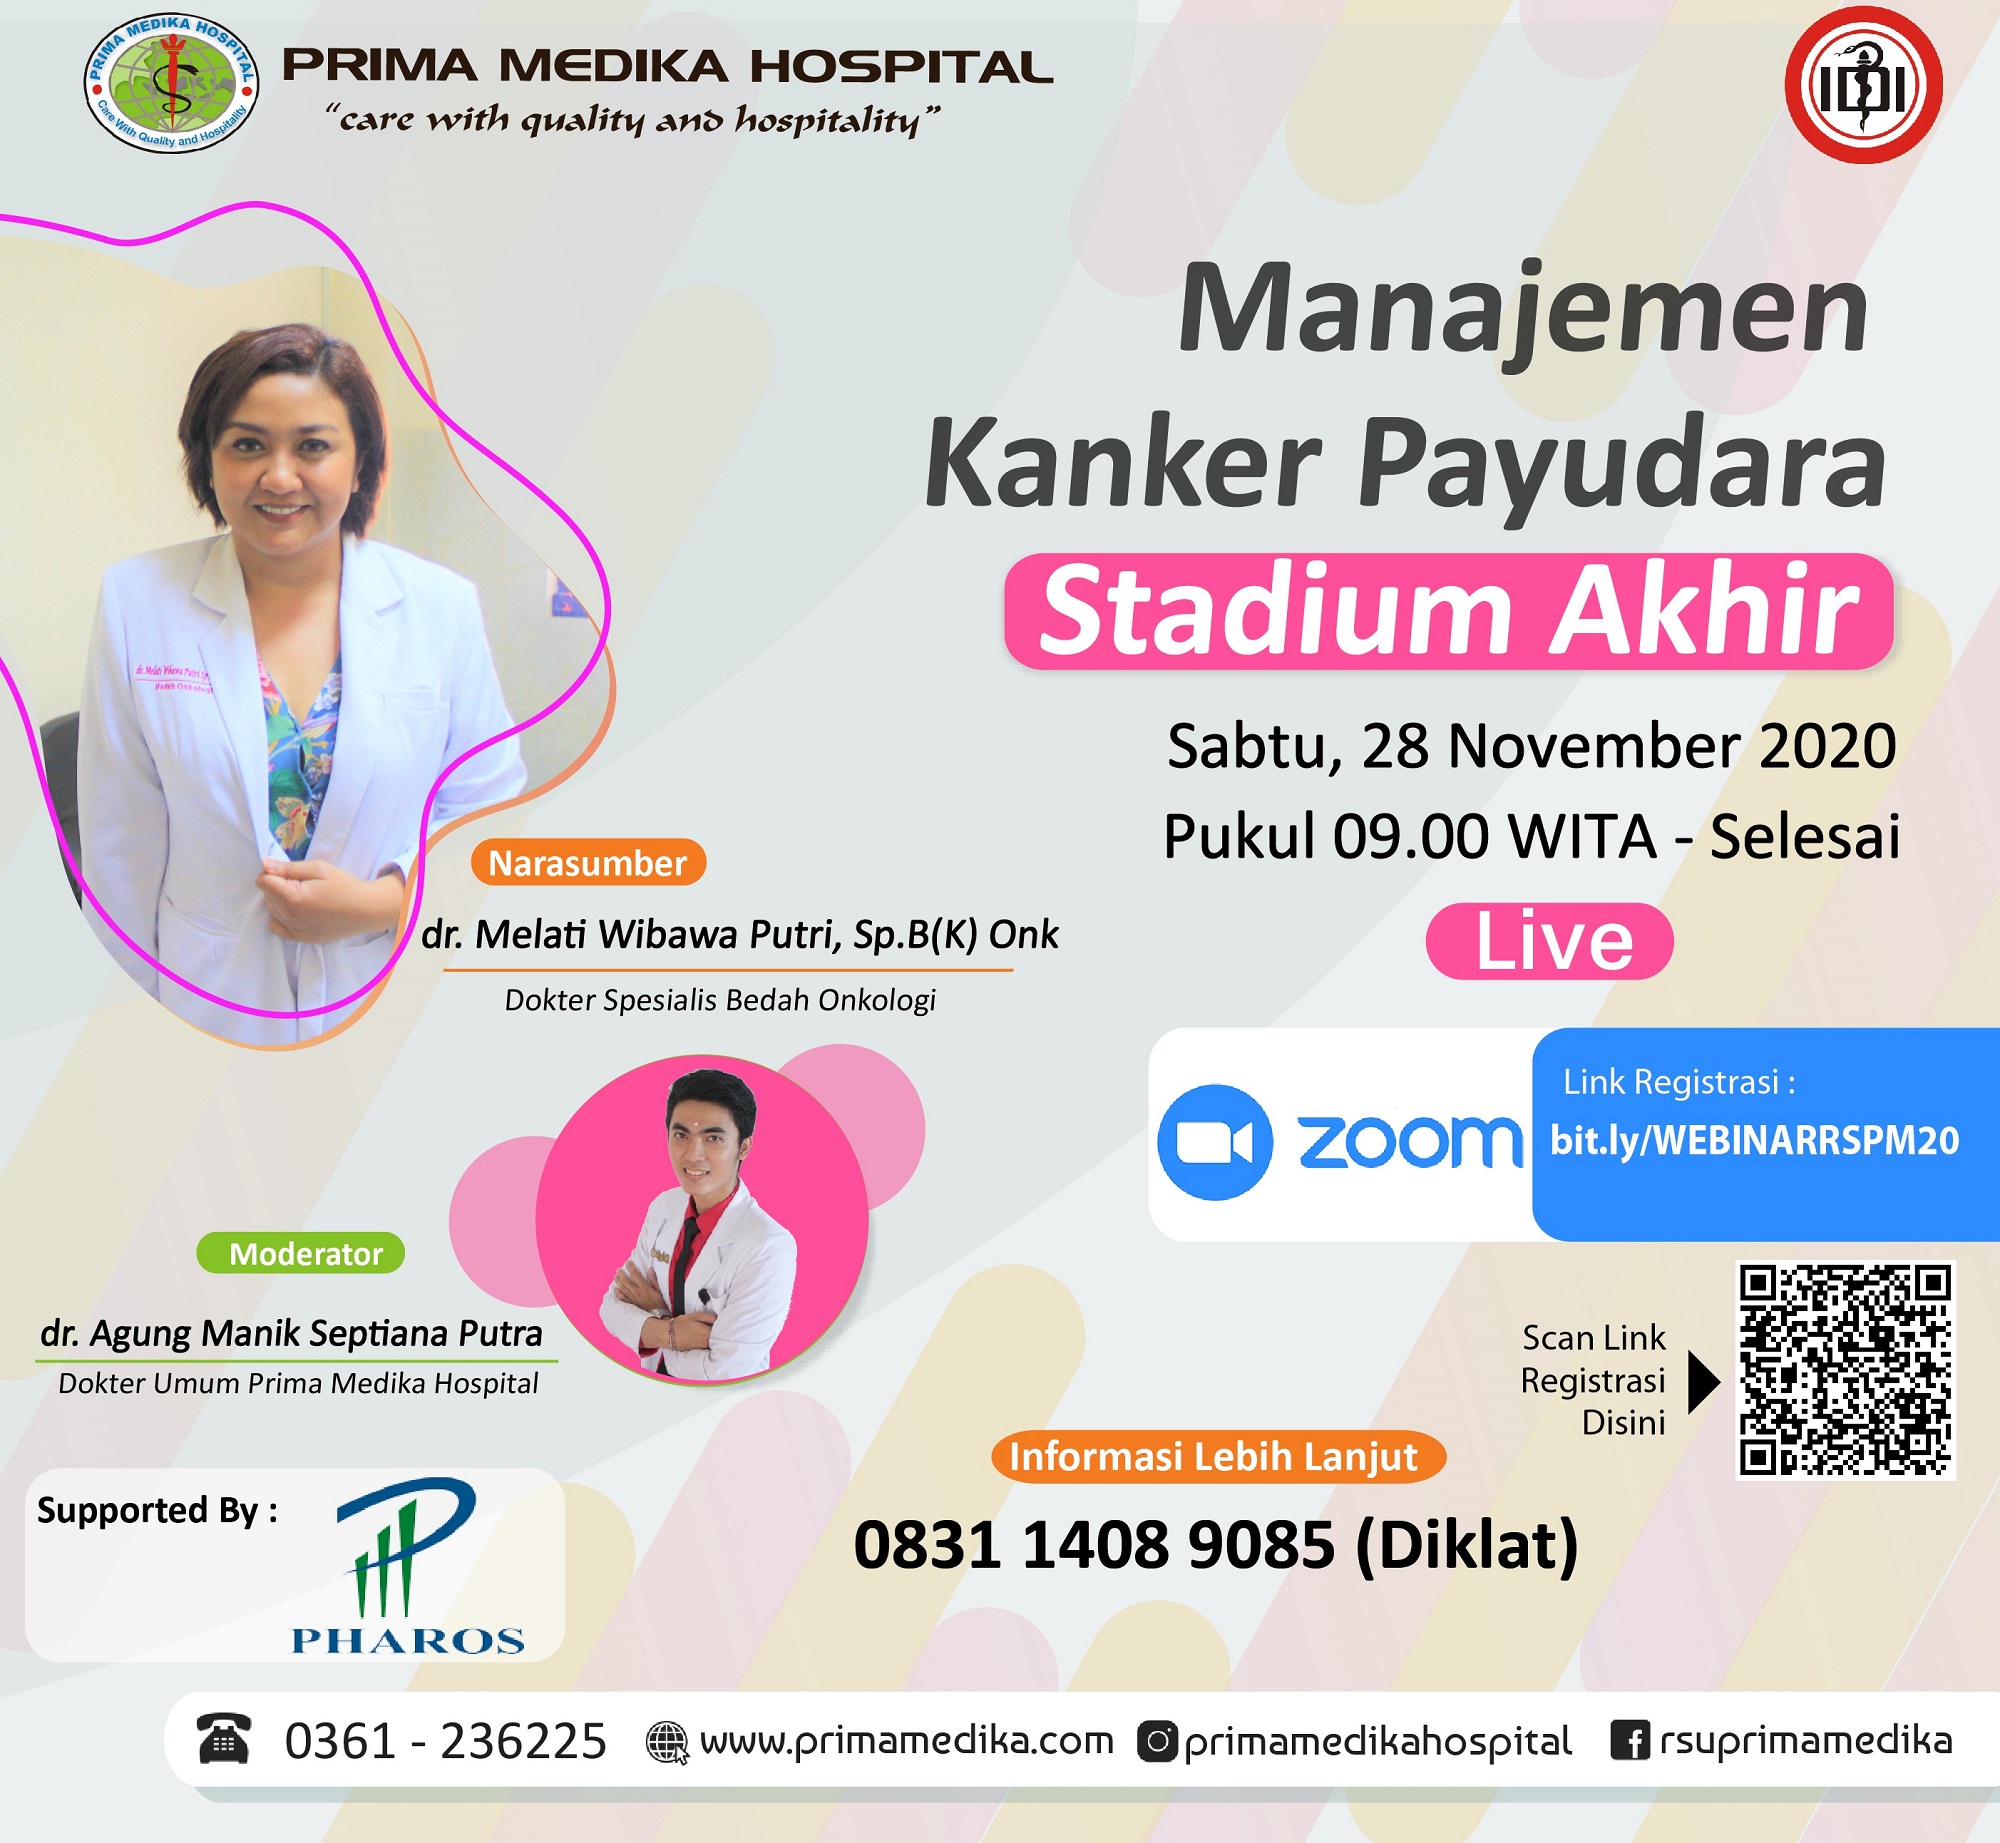 Webinar "Manajemen Kanker Payudara Stadium Akhir"